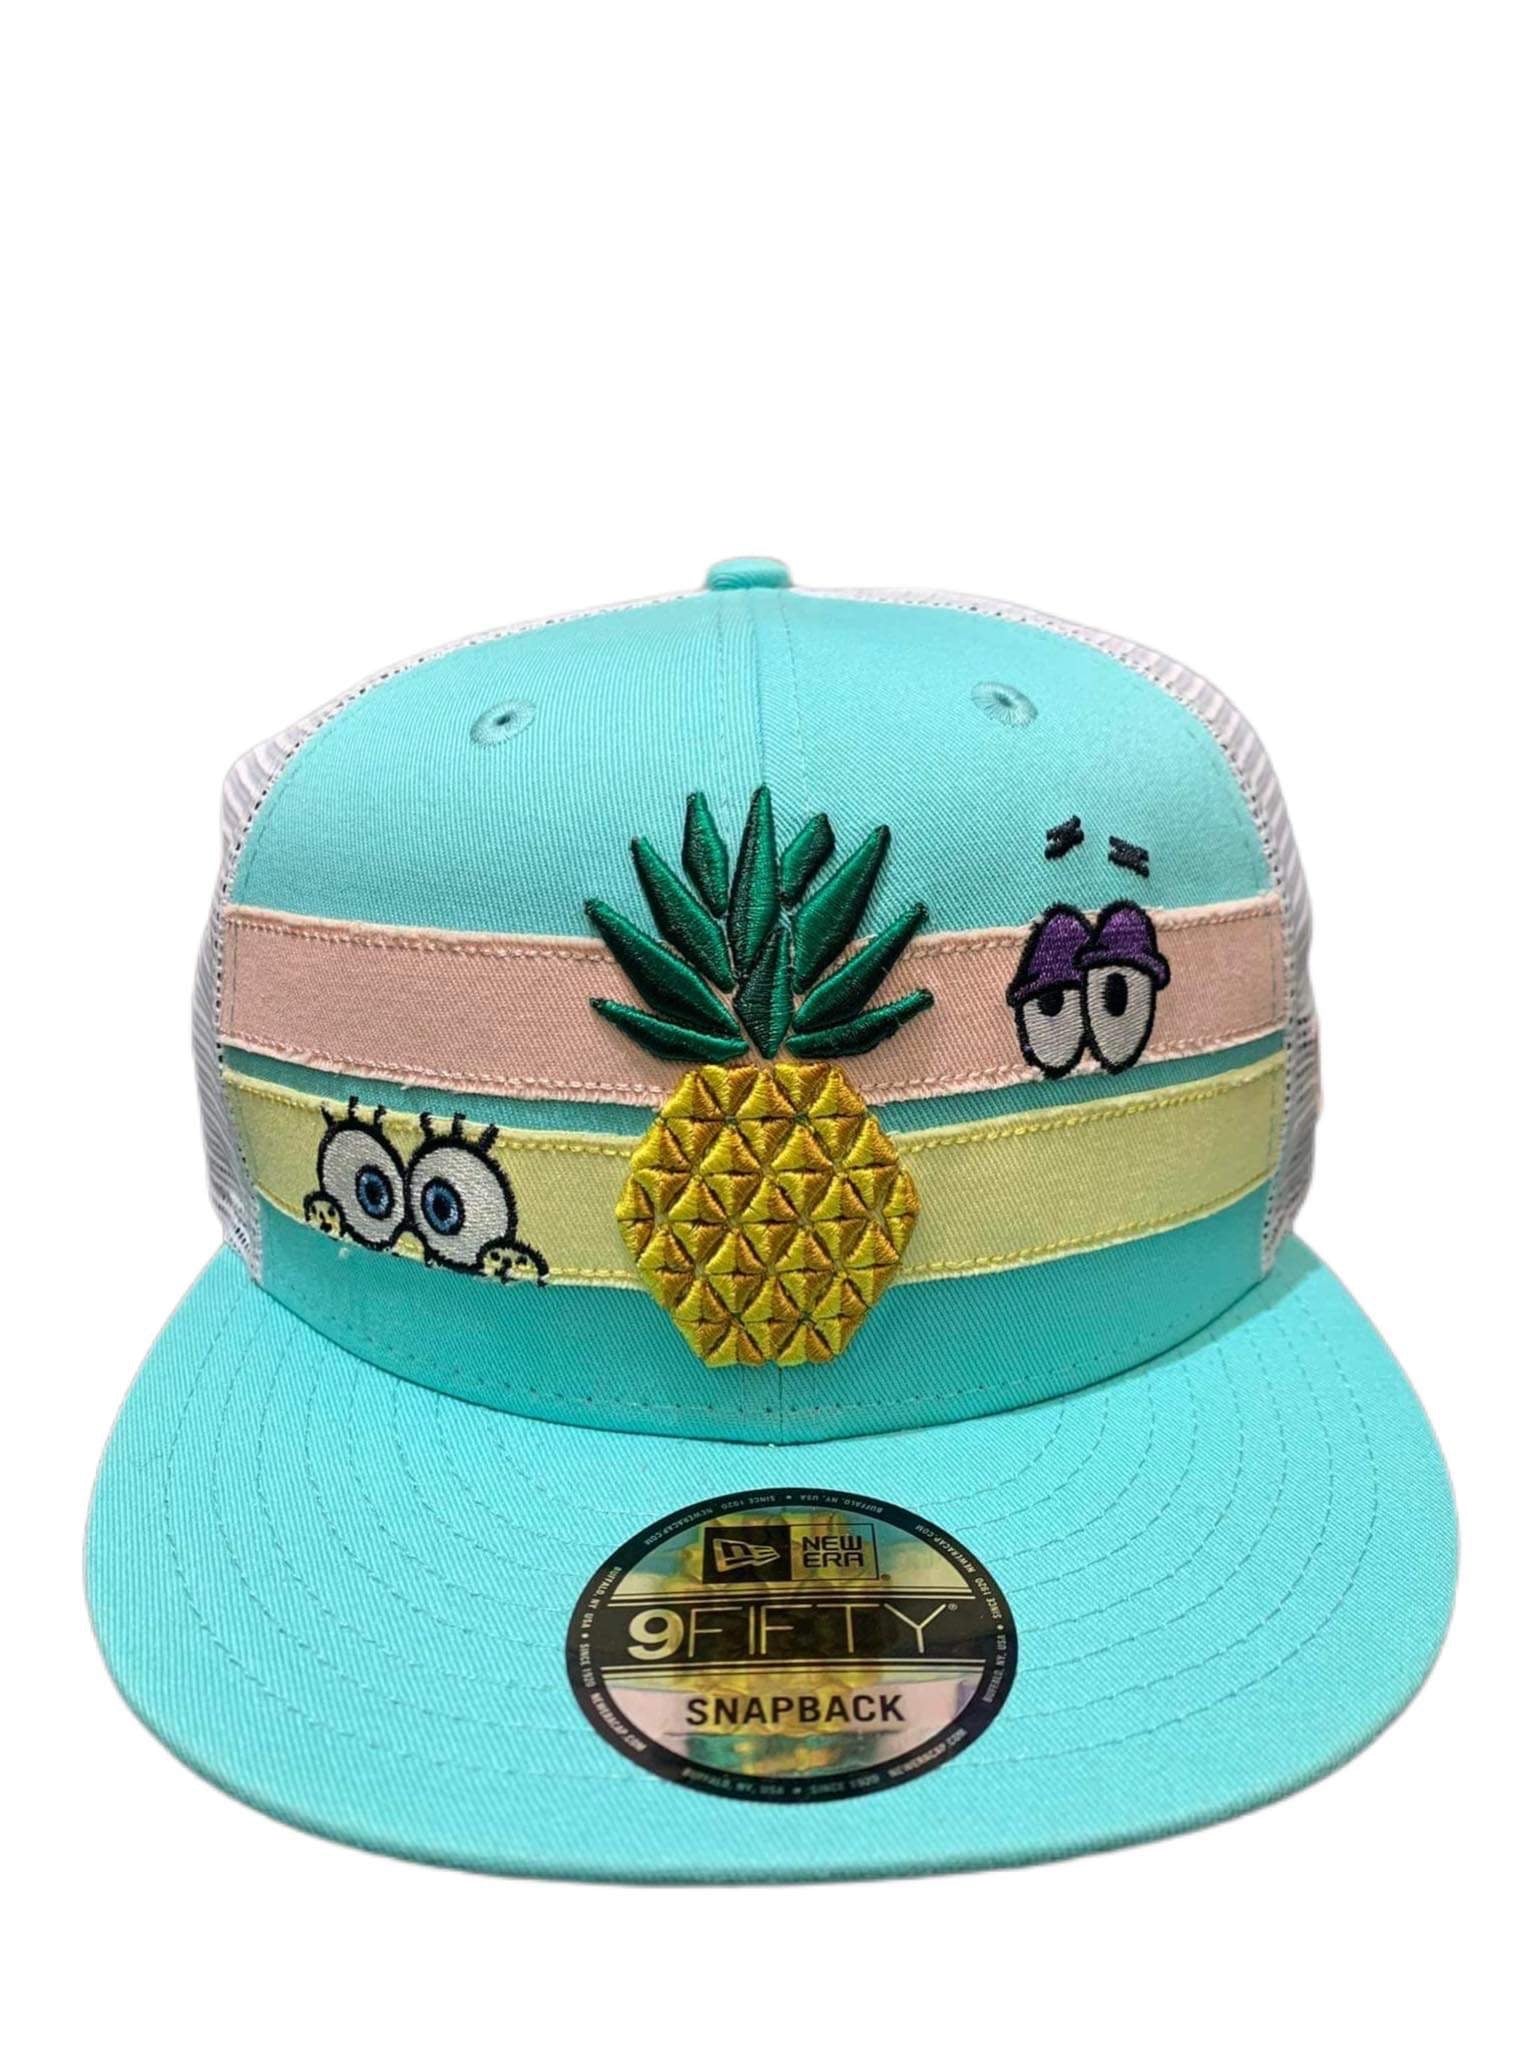 New Era Spongebob Trucker hat